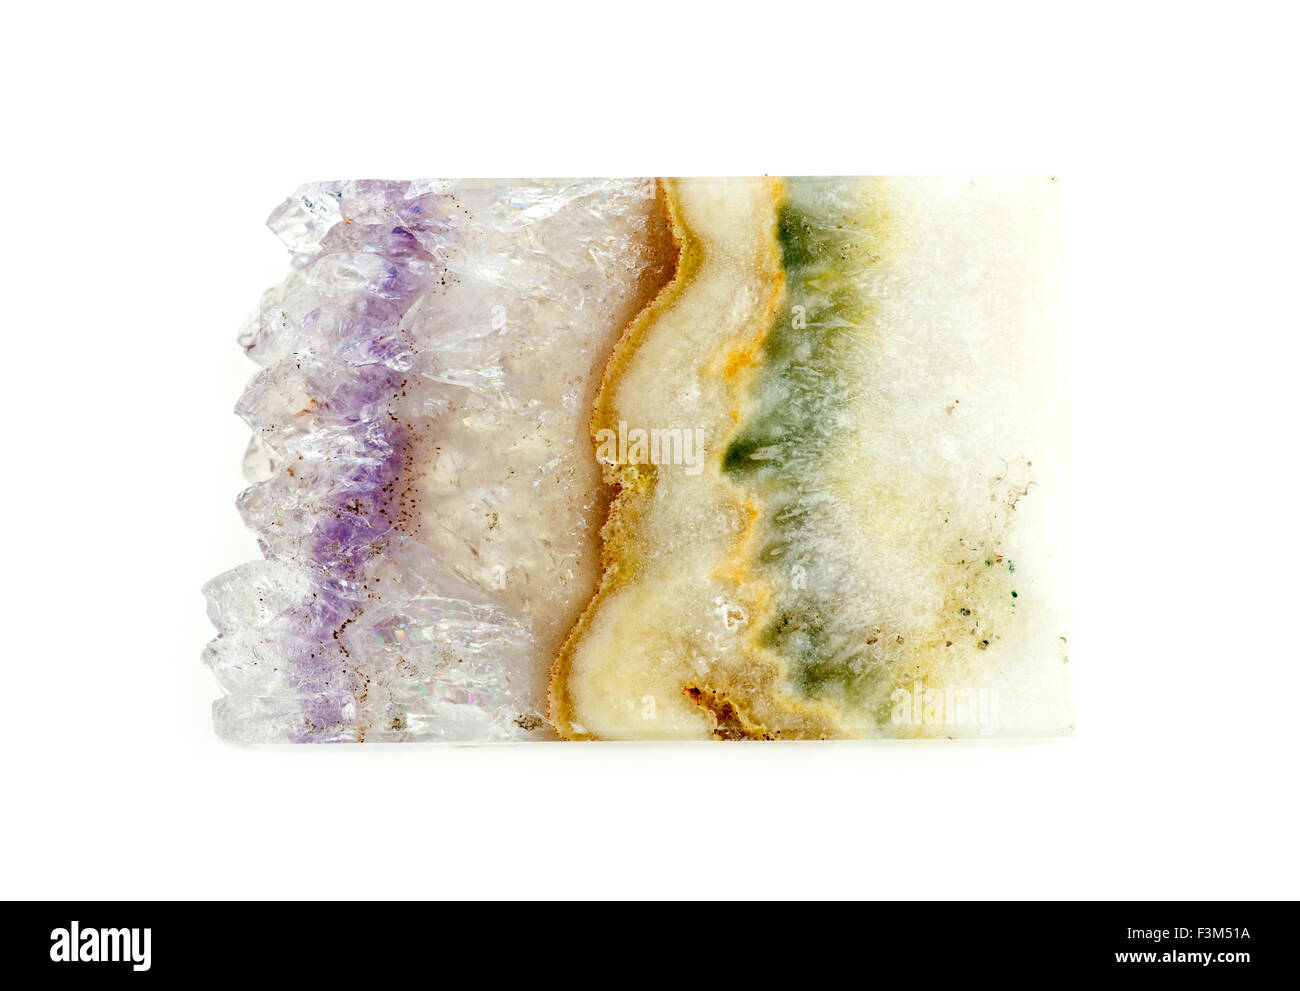 Hermoso trozo de gema geoda de Cuarzo con capas de musgo y lace ágata Foto de stock